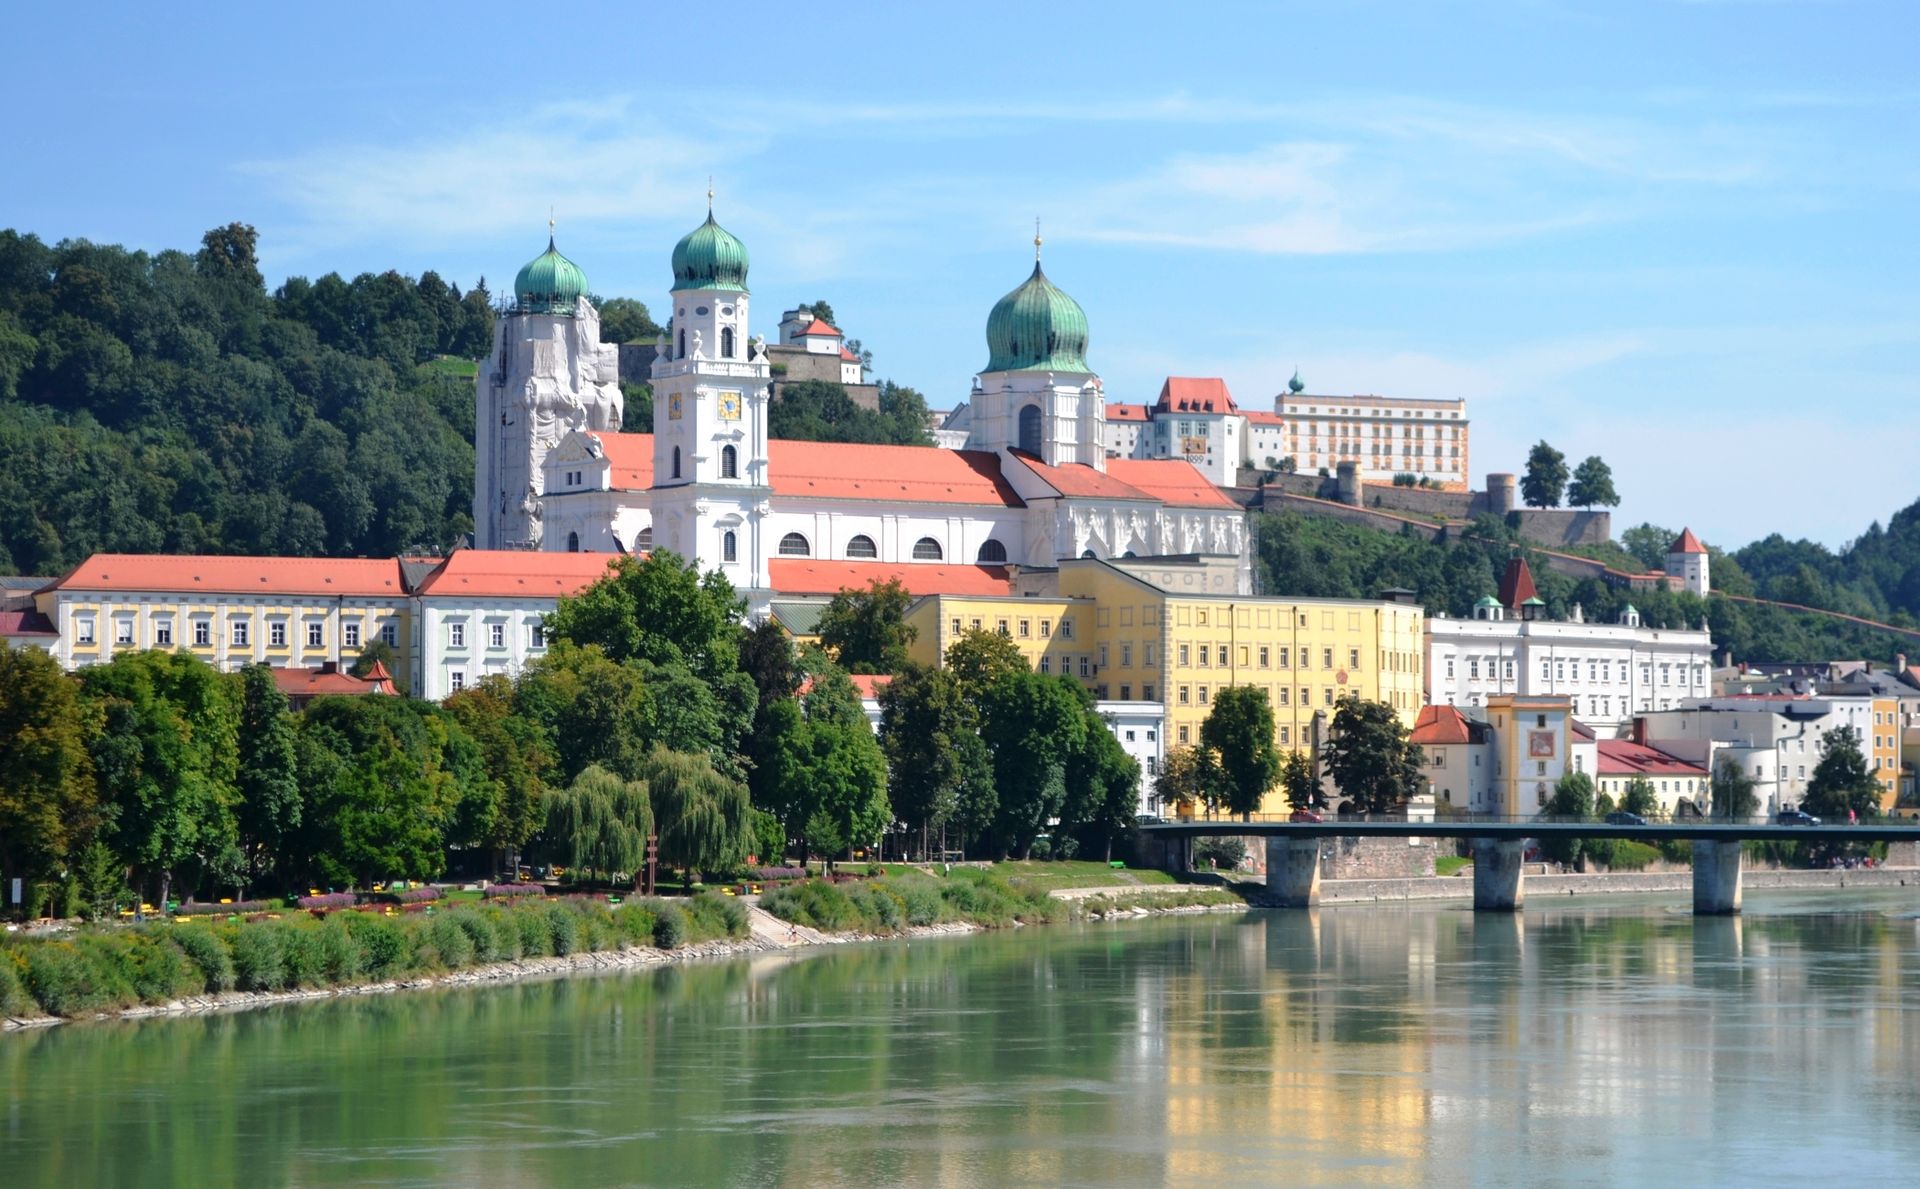 Der Passauer Dom vom Fünferlsteg aus gesehen